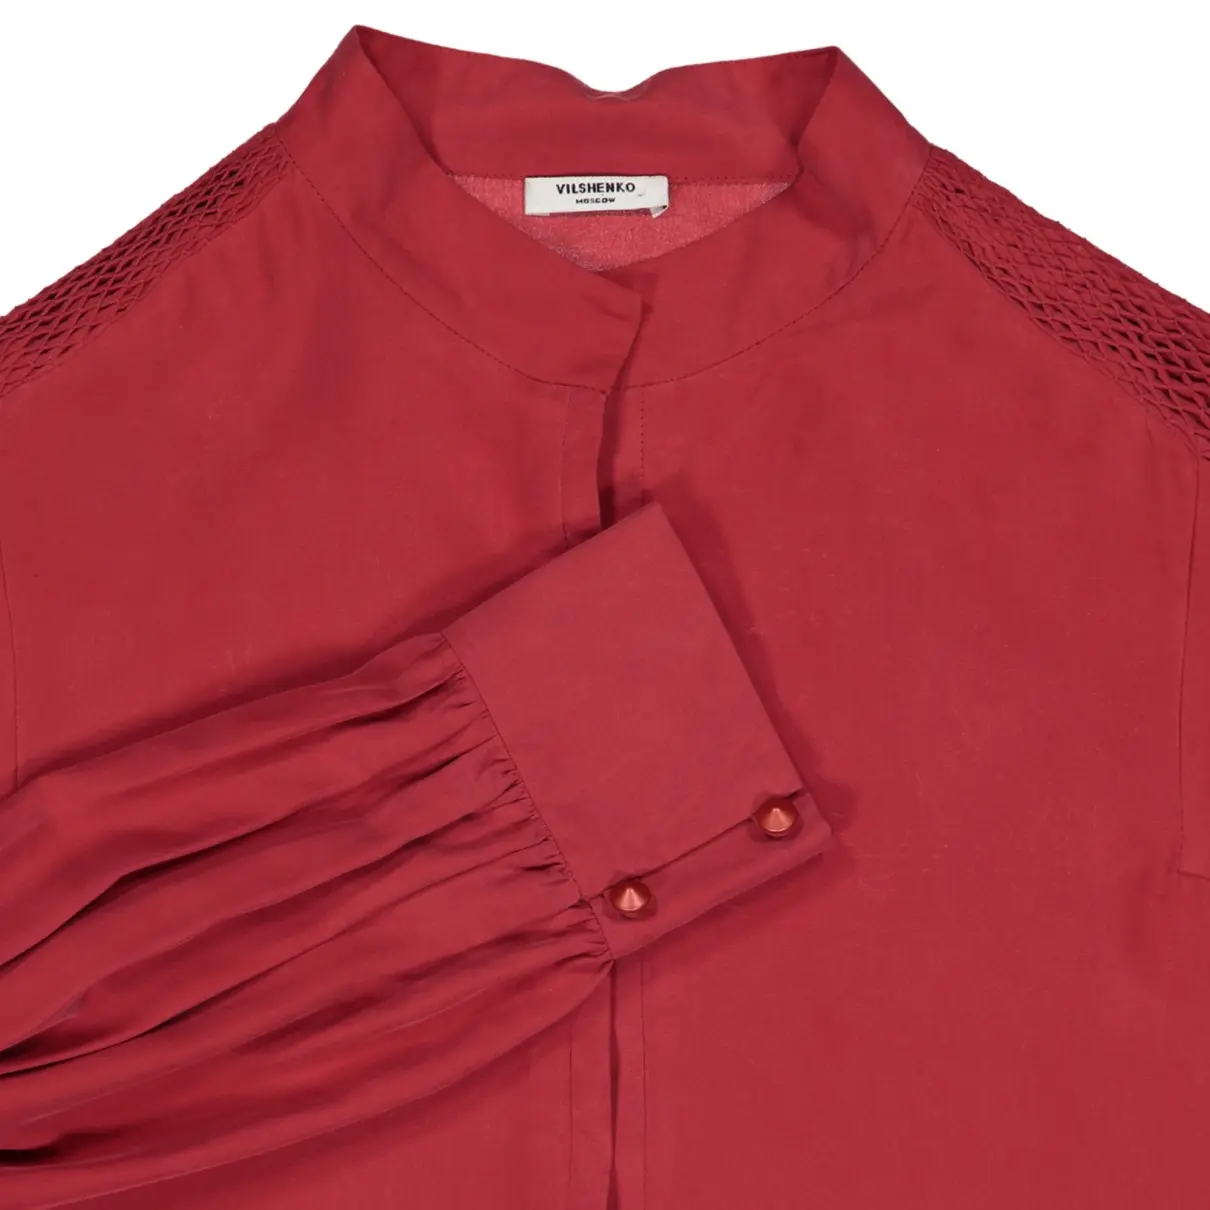 Buy Vilshenko Silk blouse online